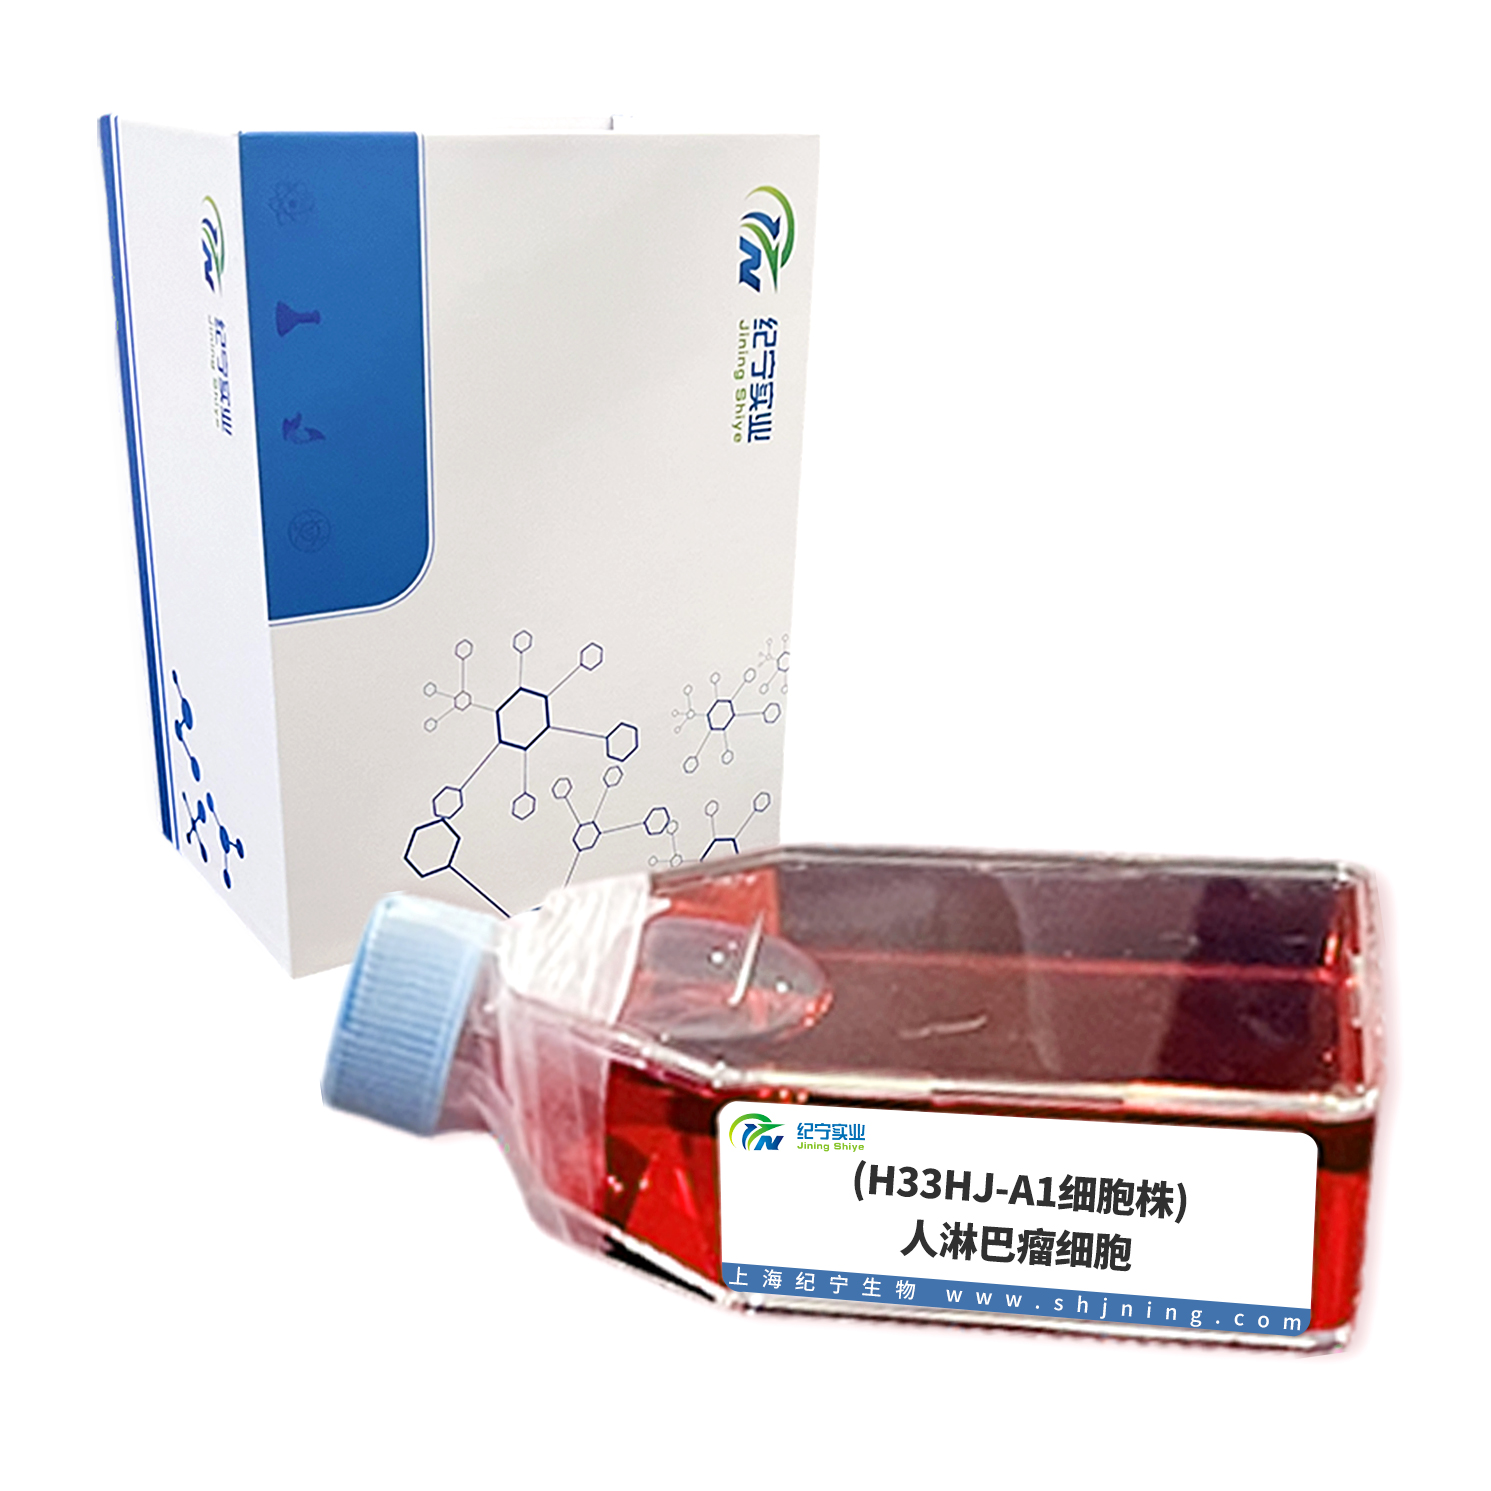 (H33HJ-A1细胞株)人淋巴瘤细胞